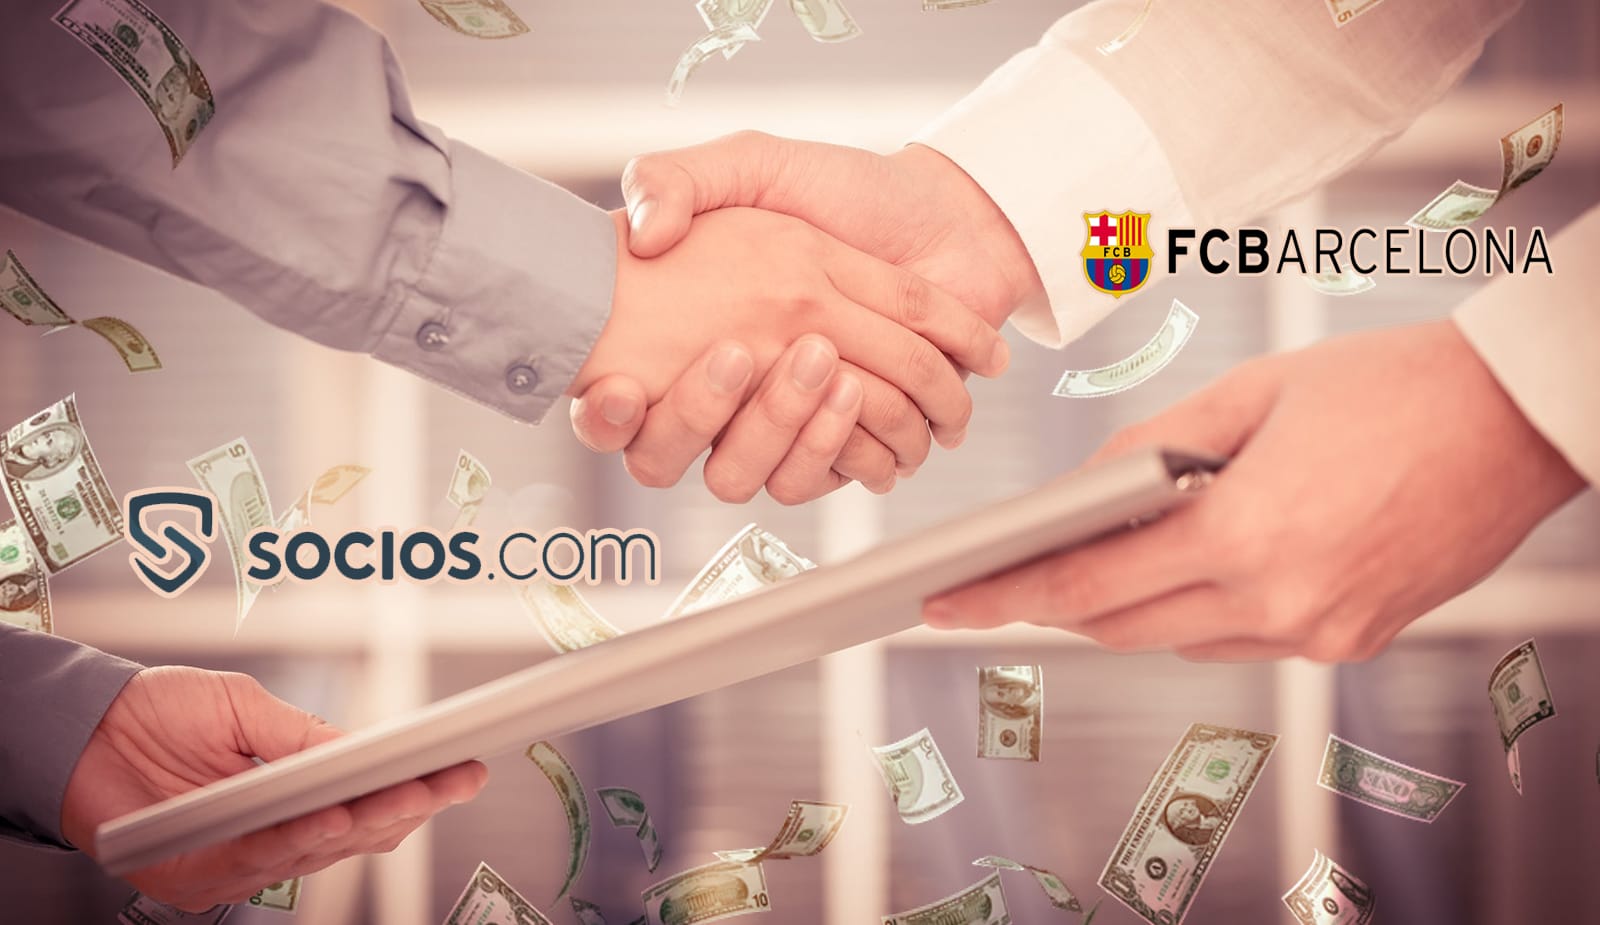 Socios.com вкладывает $100 млн в “Барселону” для развития Web3 и NFT-проектов клуба. Заглавный коллаж новости.